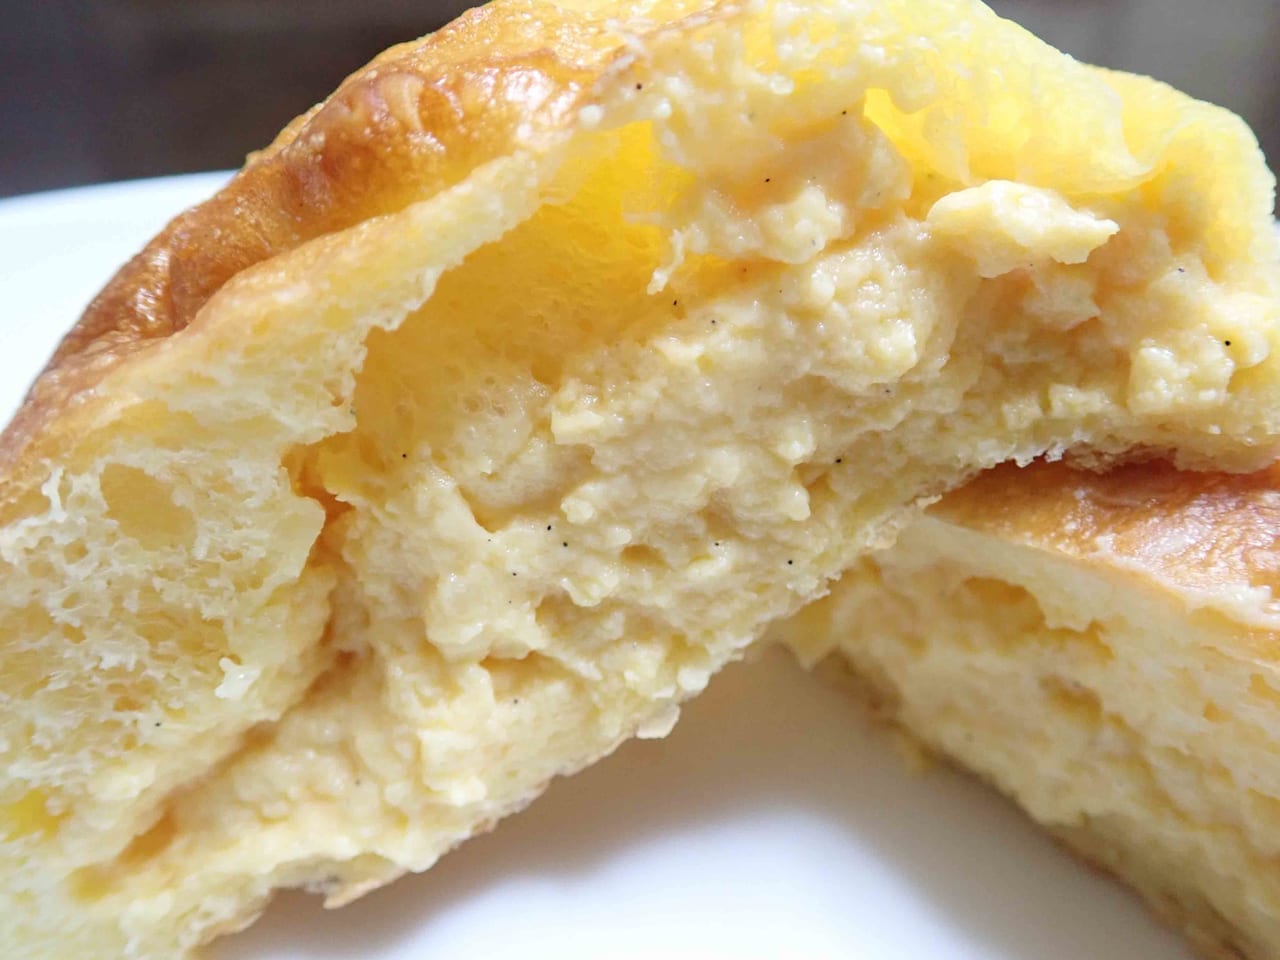 クリームパンが美味しい『NANTSUKA BAKERY』